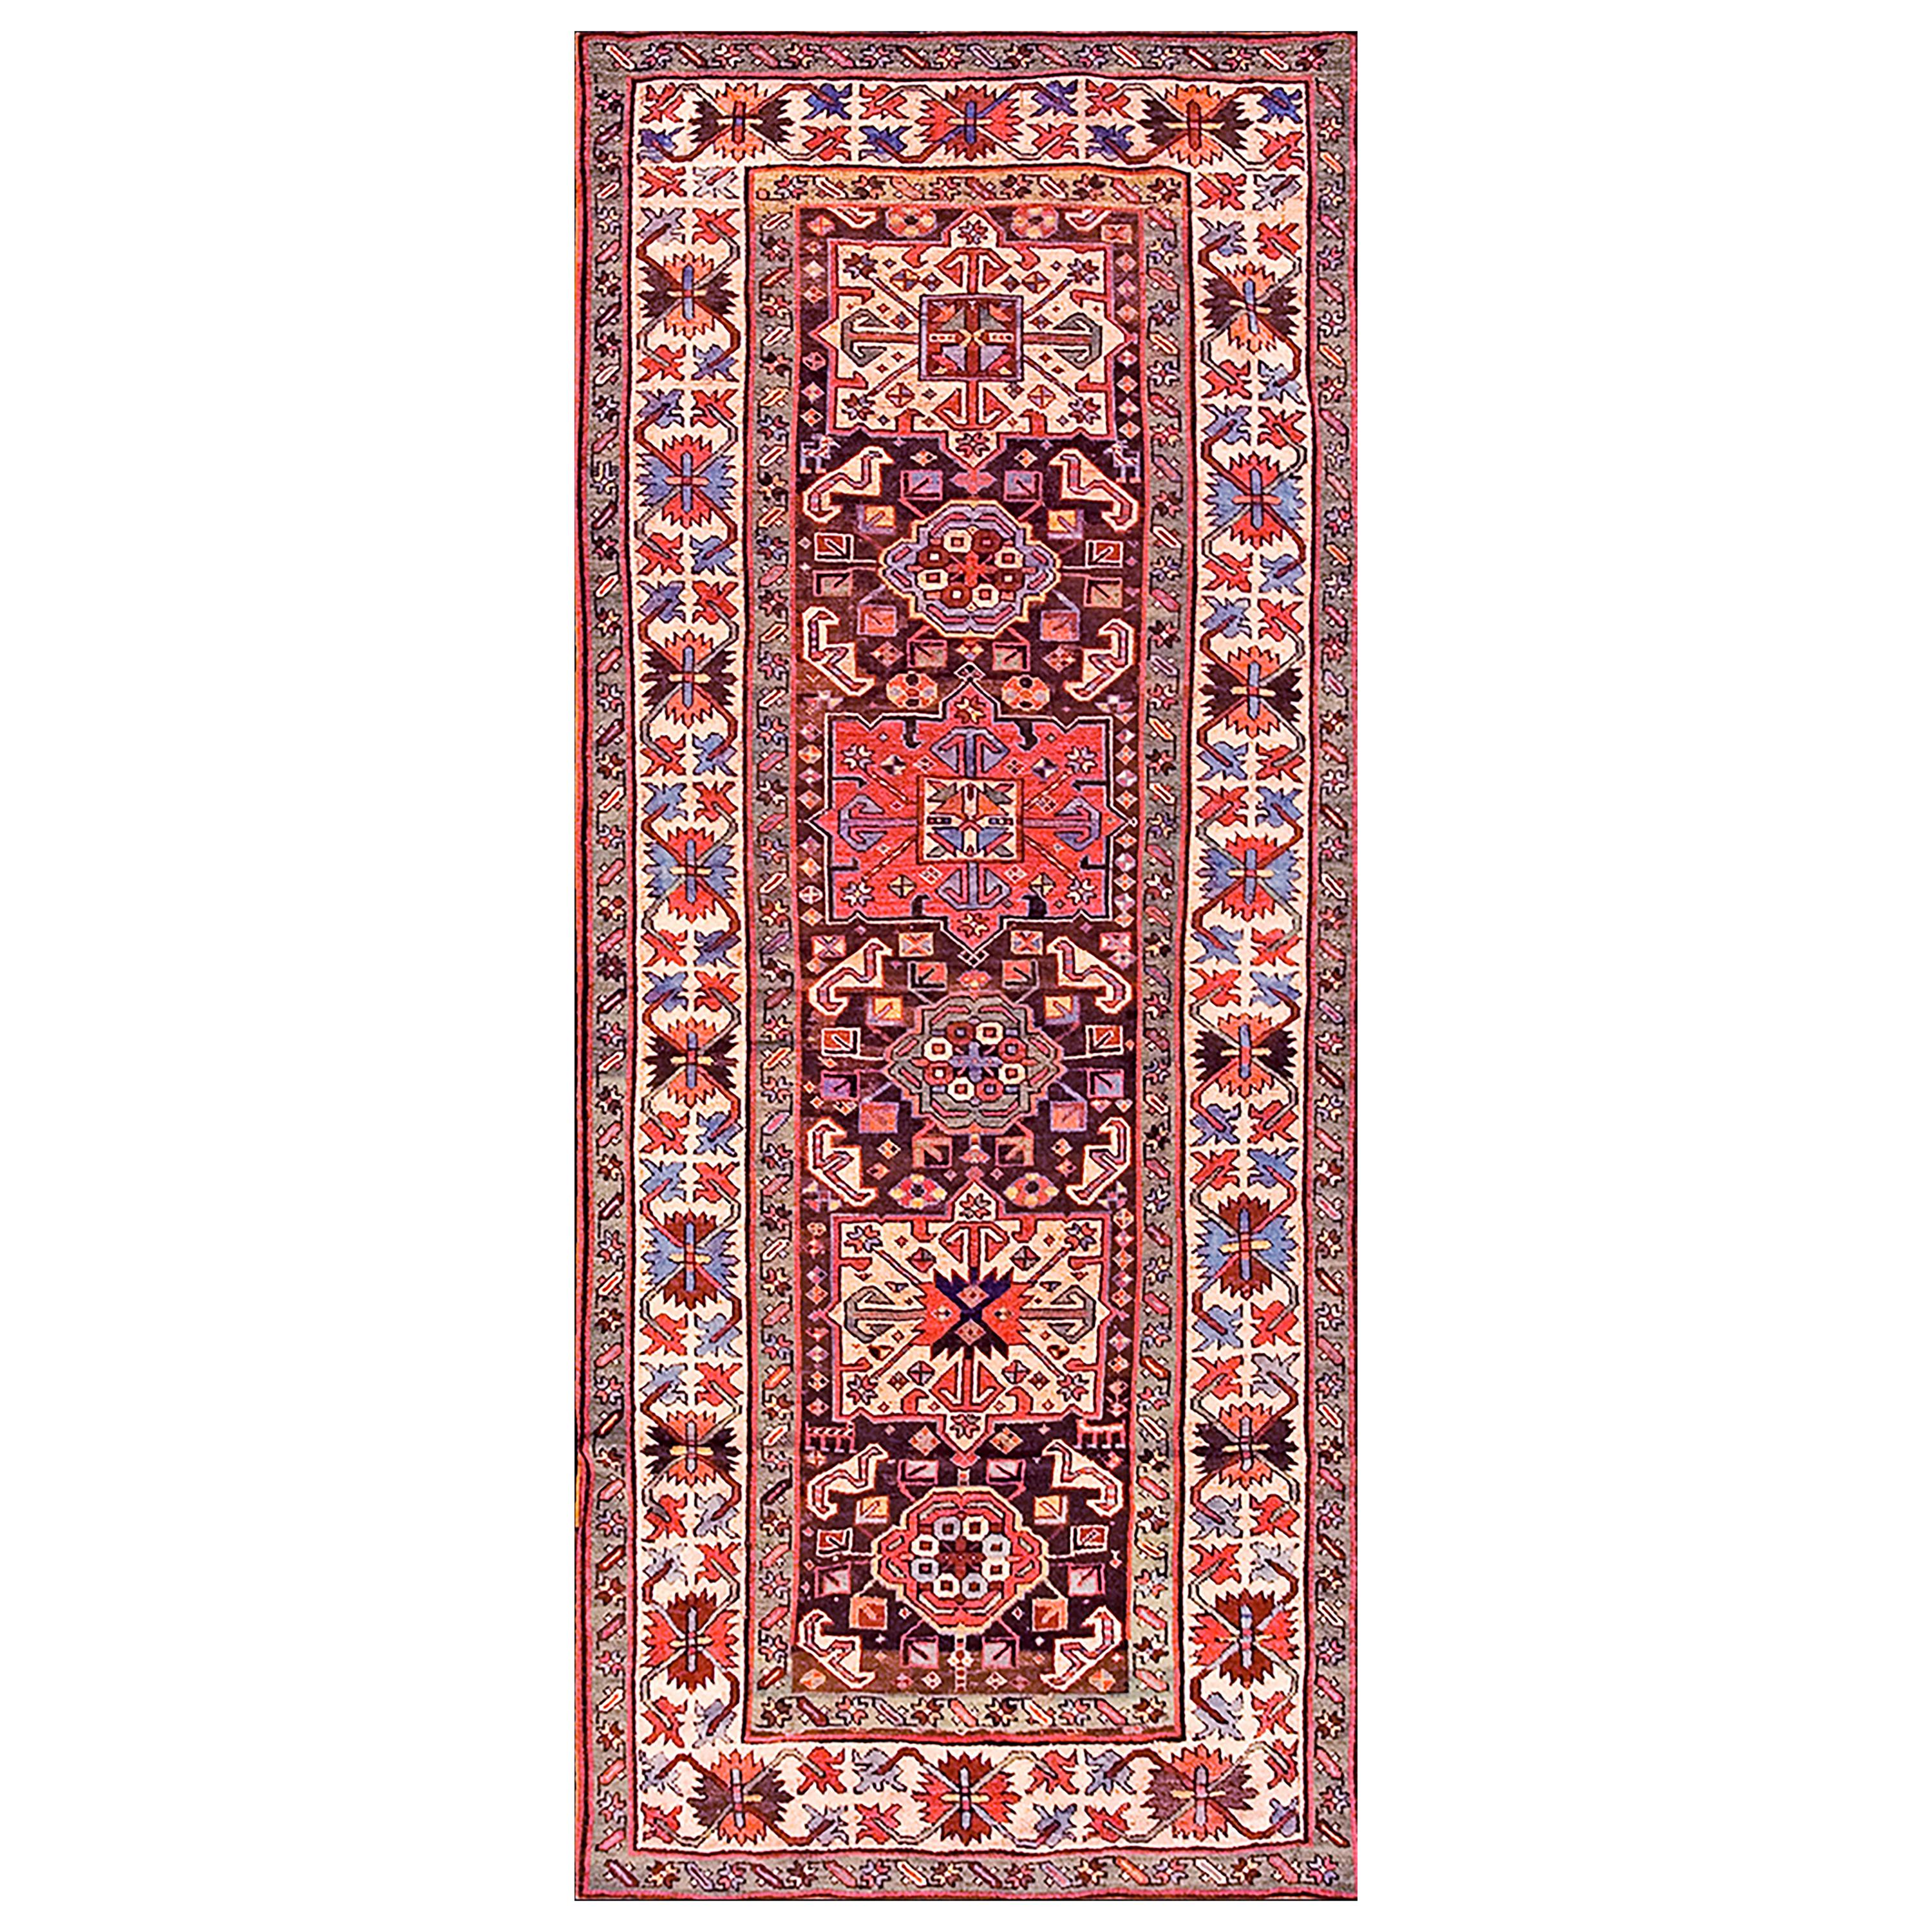 Kaukasischer Kasachischer Teppich des 19. Jahrhunderts ( 3'6" x 9'2" - 107 x 279")